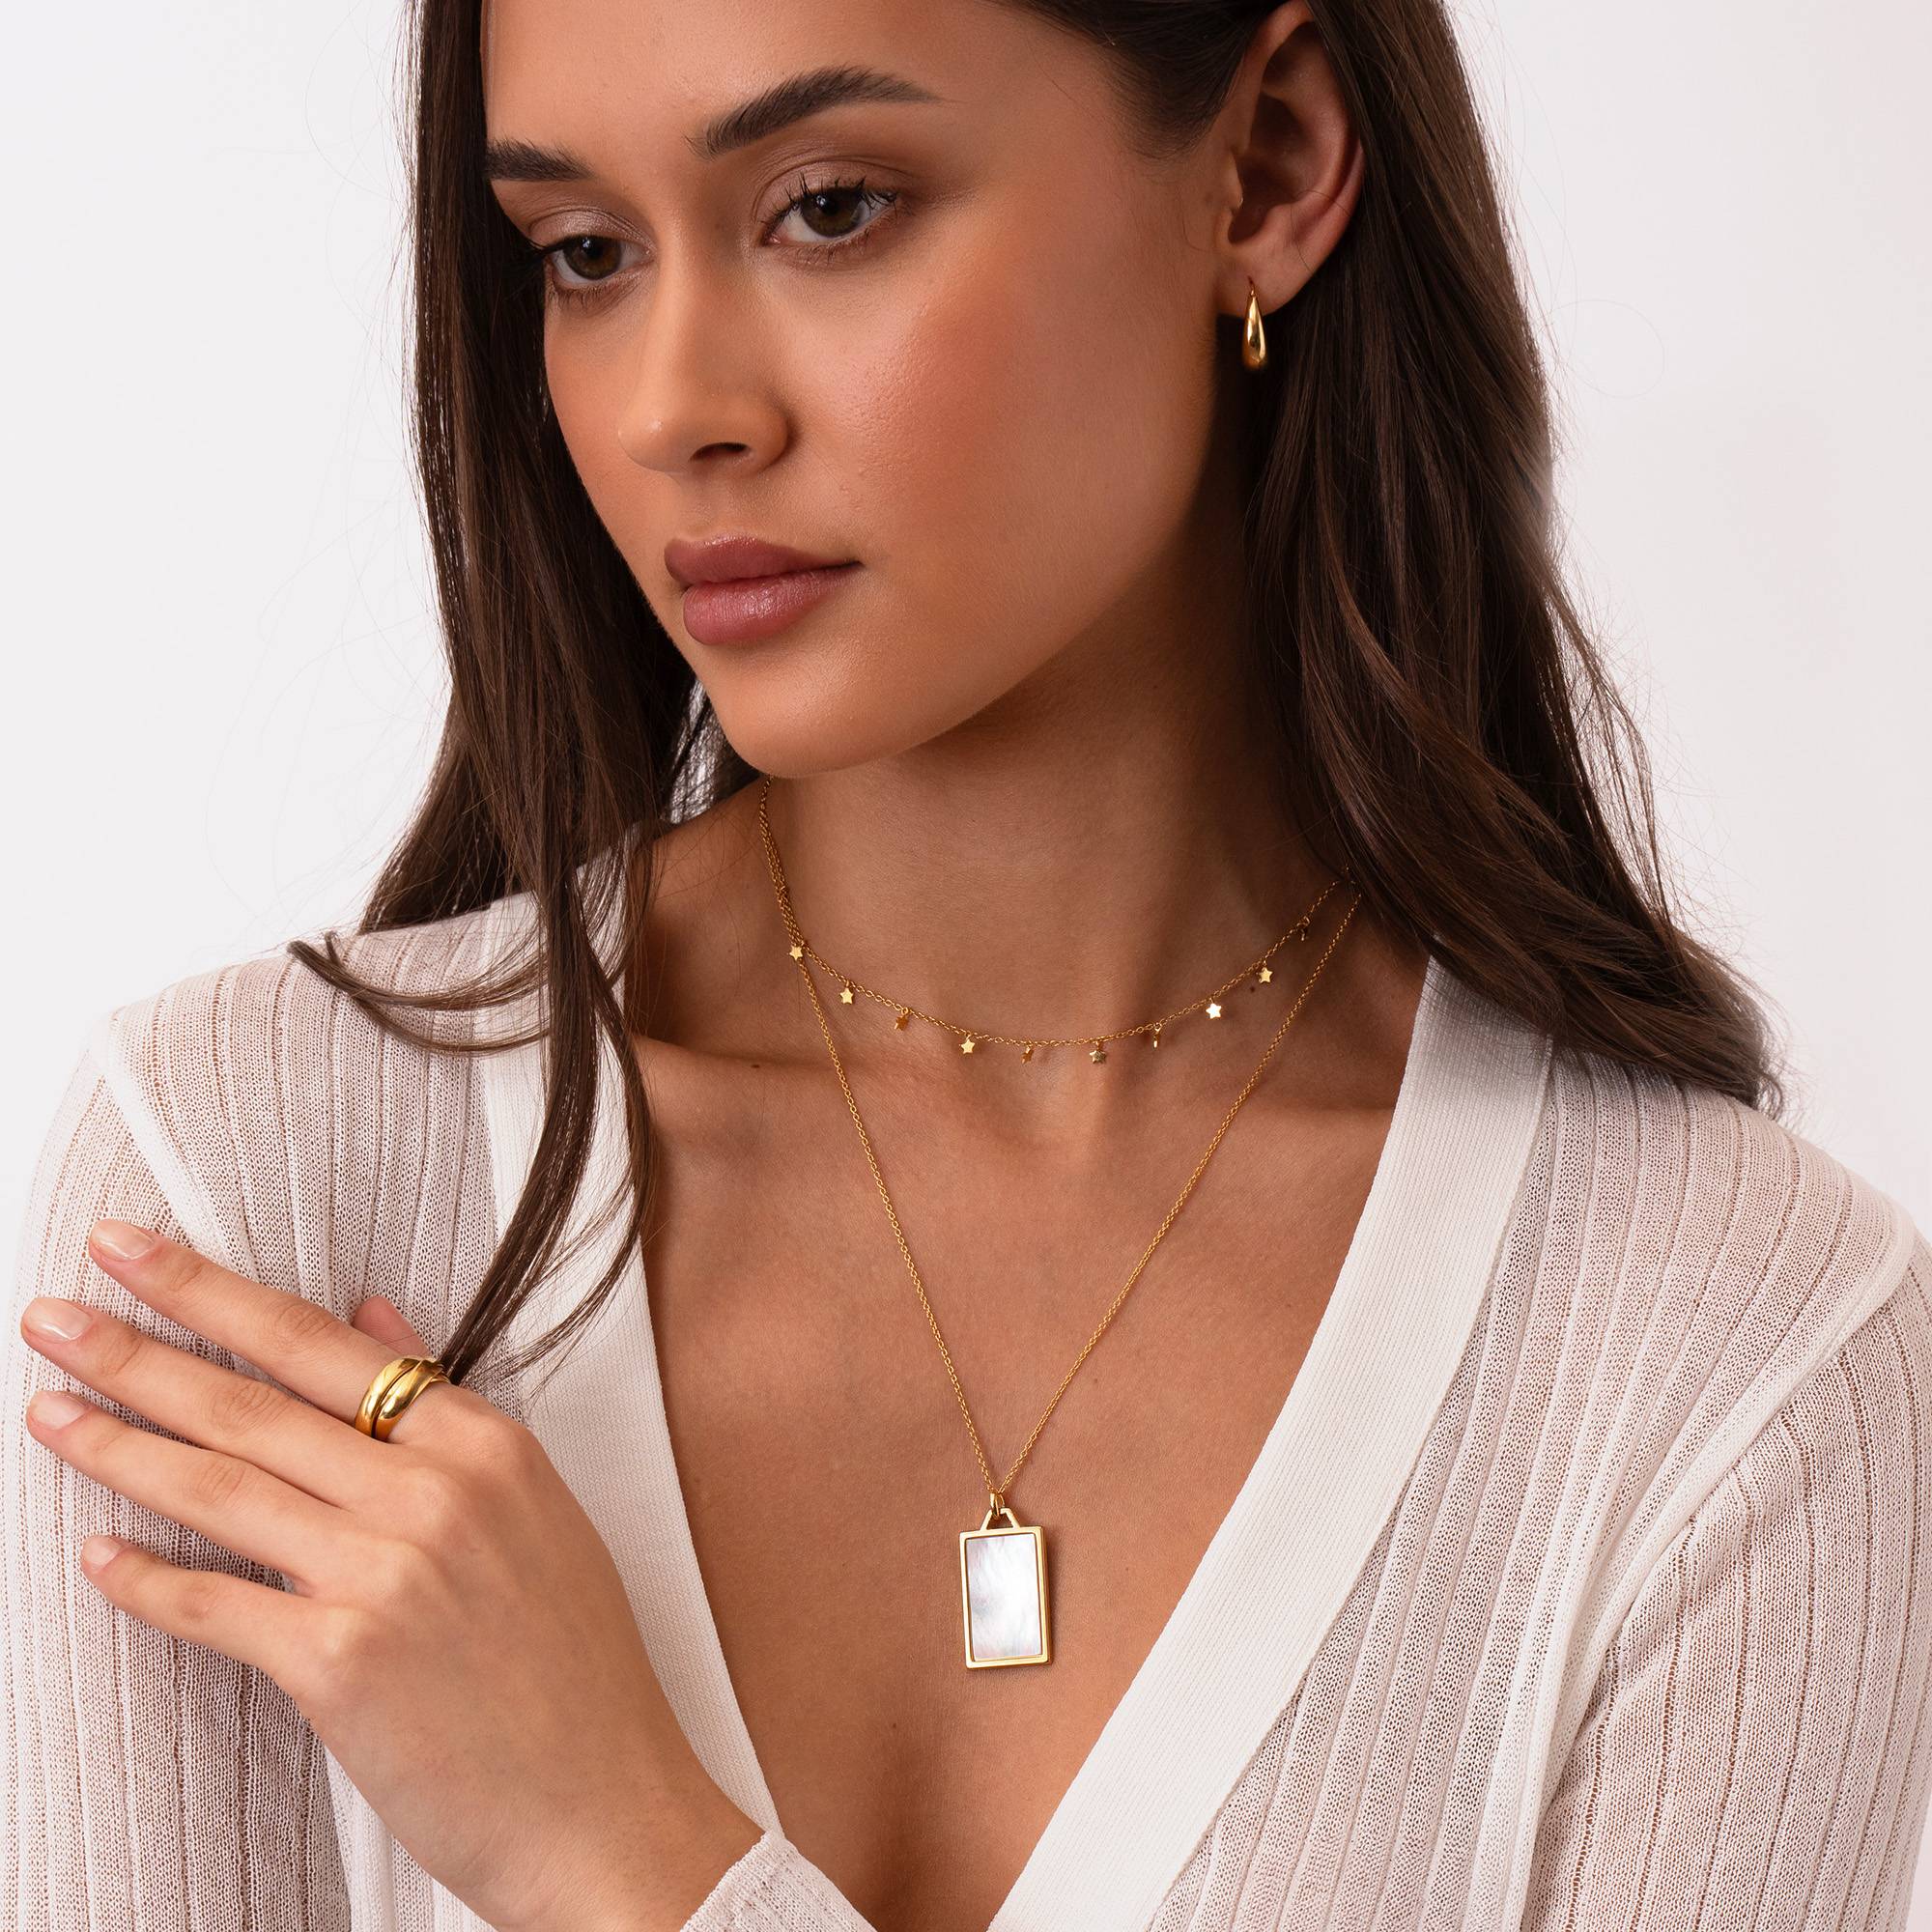 Himmlische Mutterperle personalisierte Halskette - 750er vergoldetes Silber-2 Produktfoto